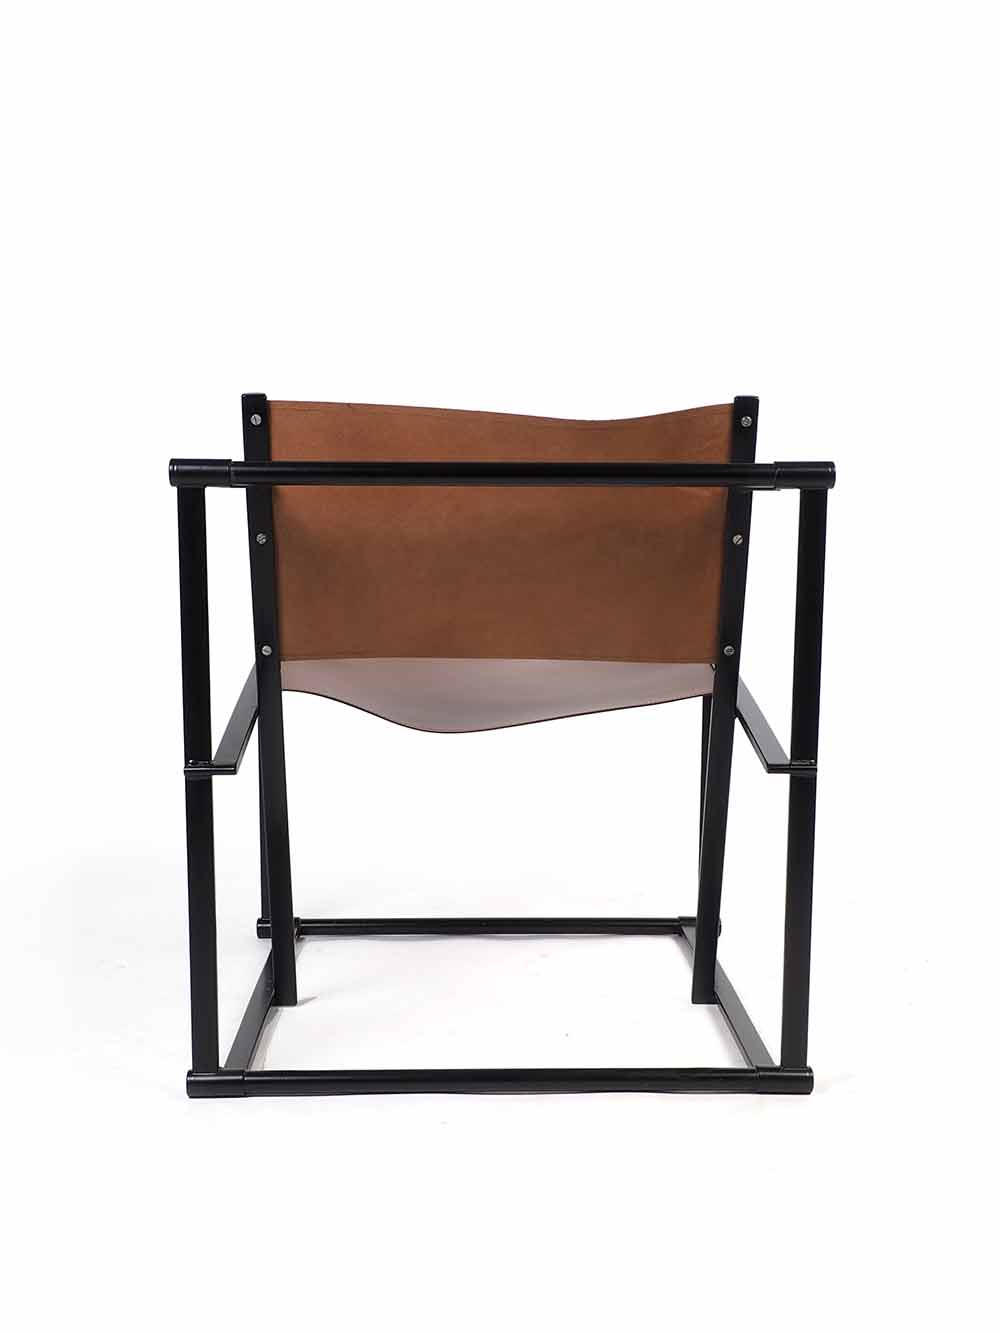 FM60 lounge chair - Pastoe - Radboud van Beekum